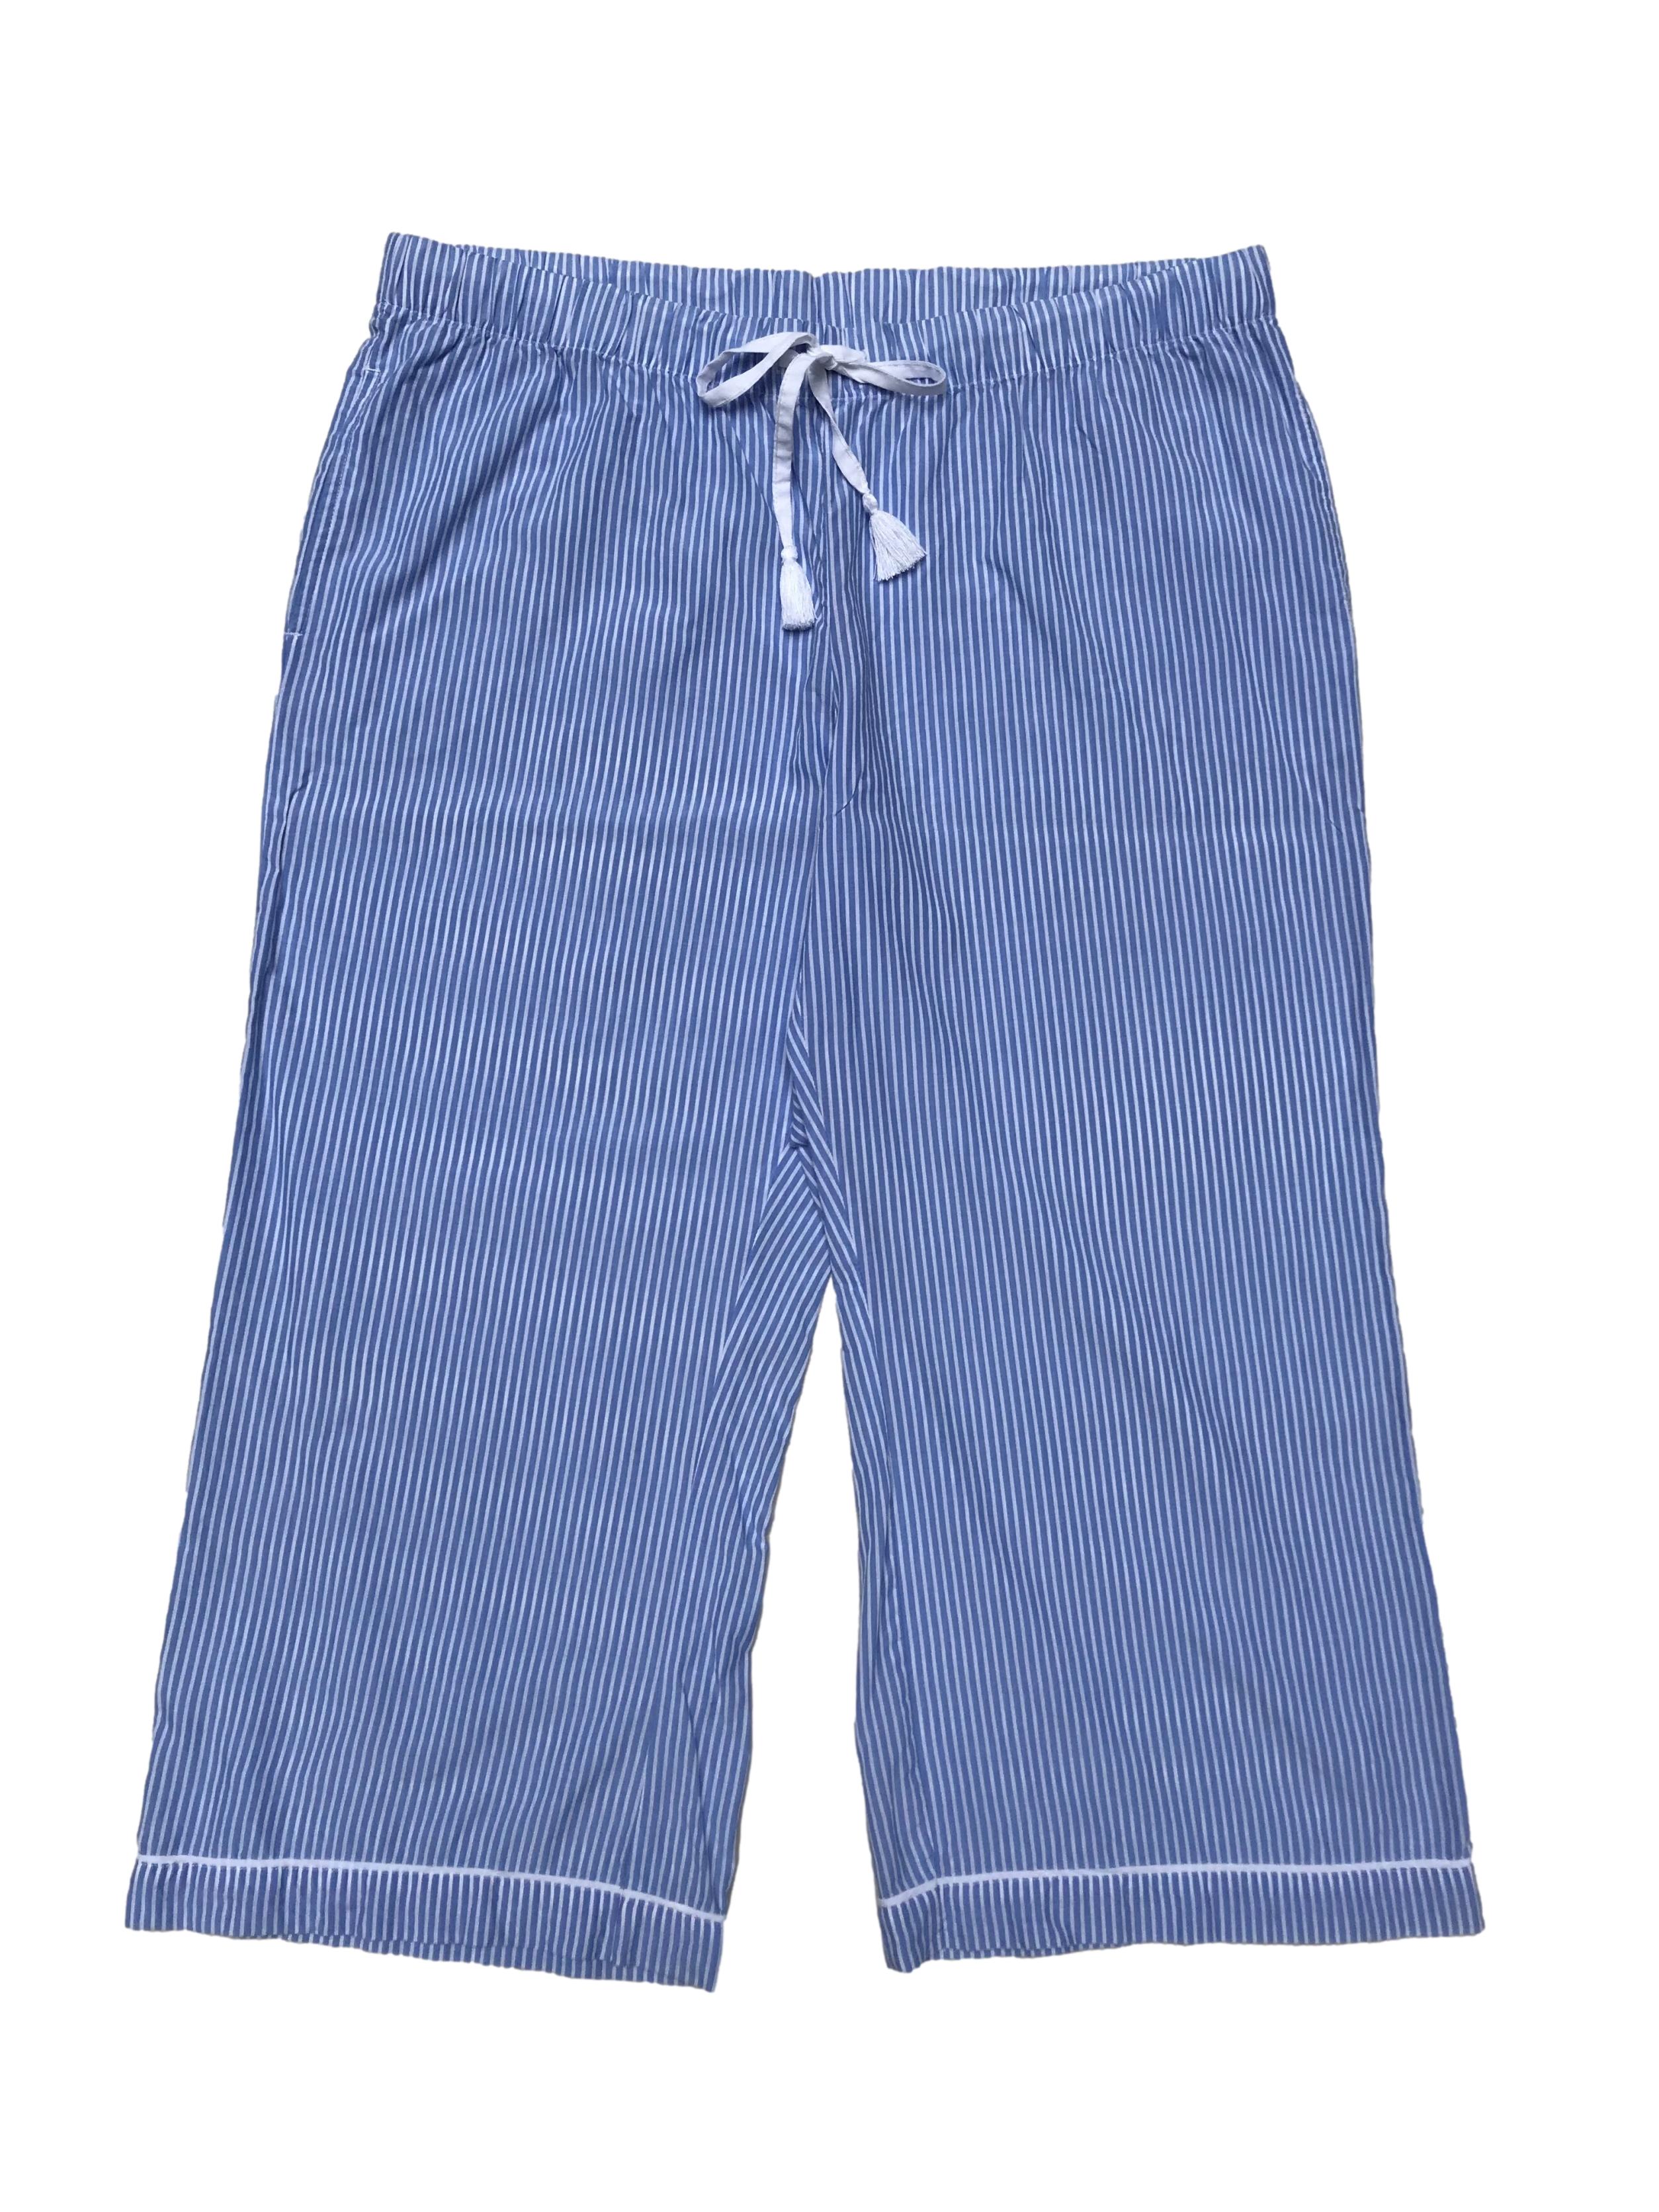 Pantalón sleepwear Gillian & Omalley celeste a rayas, 100% tencel, pretina elástica y pasador para regular, tiene bolsillos laterales ydobladillo en la basta. Pretina 98cm Largo 90cm